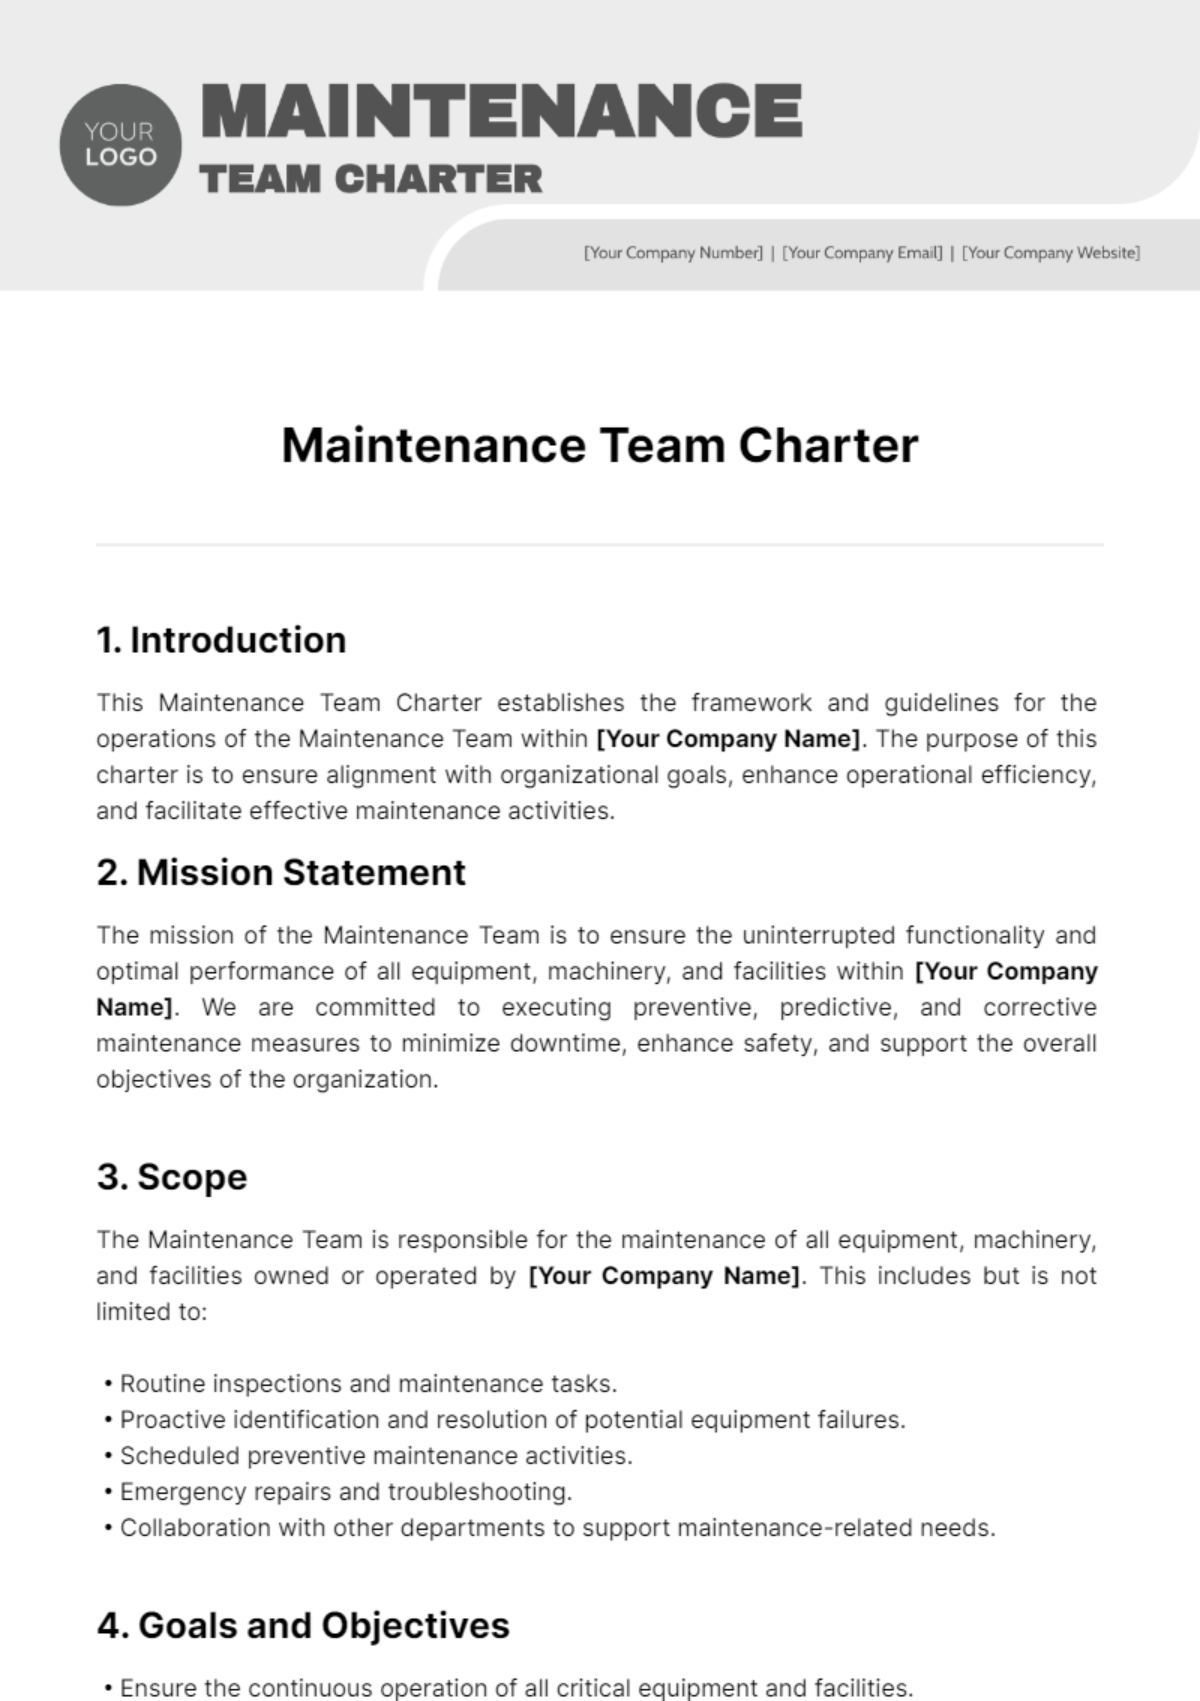 Maintenance Team Charter Template